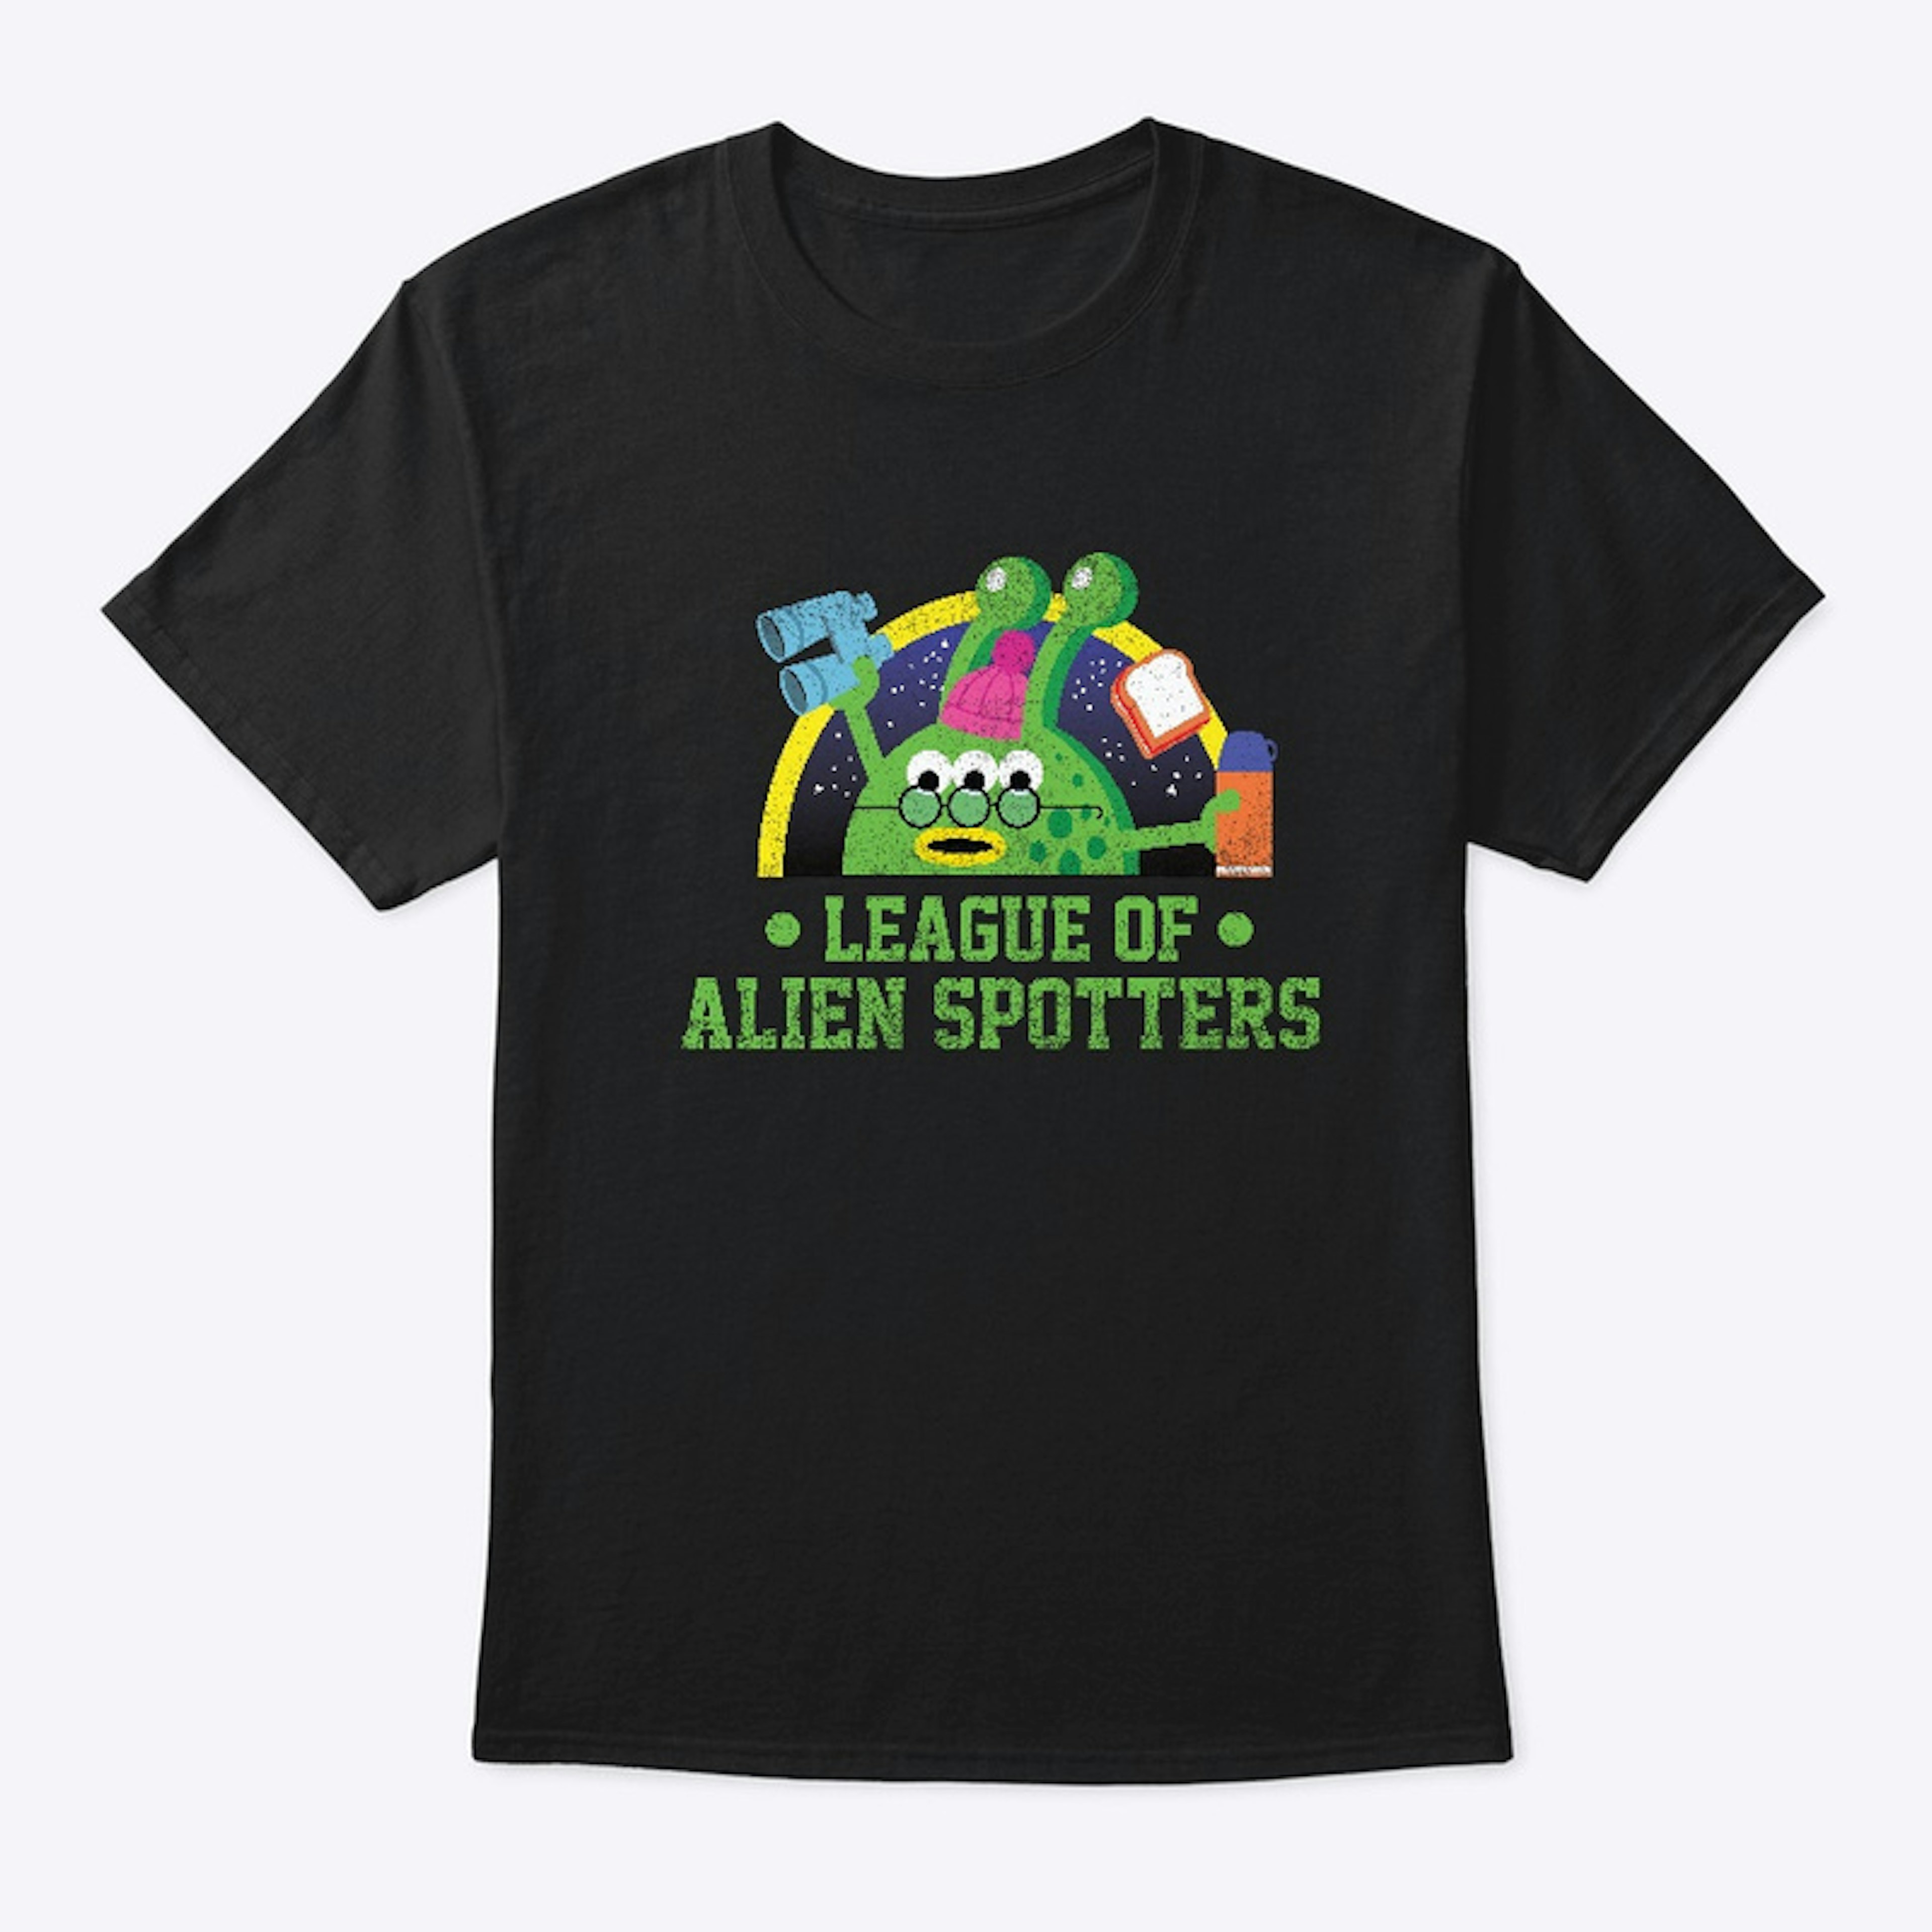 League of Alien Spotters